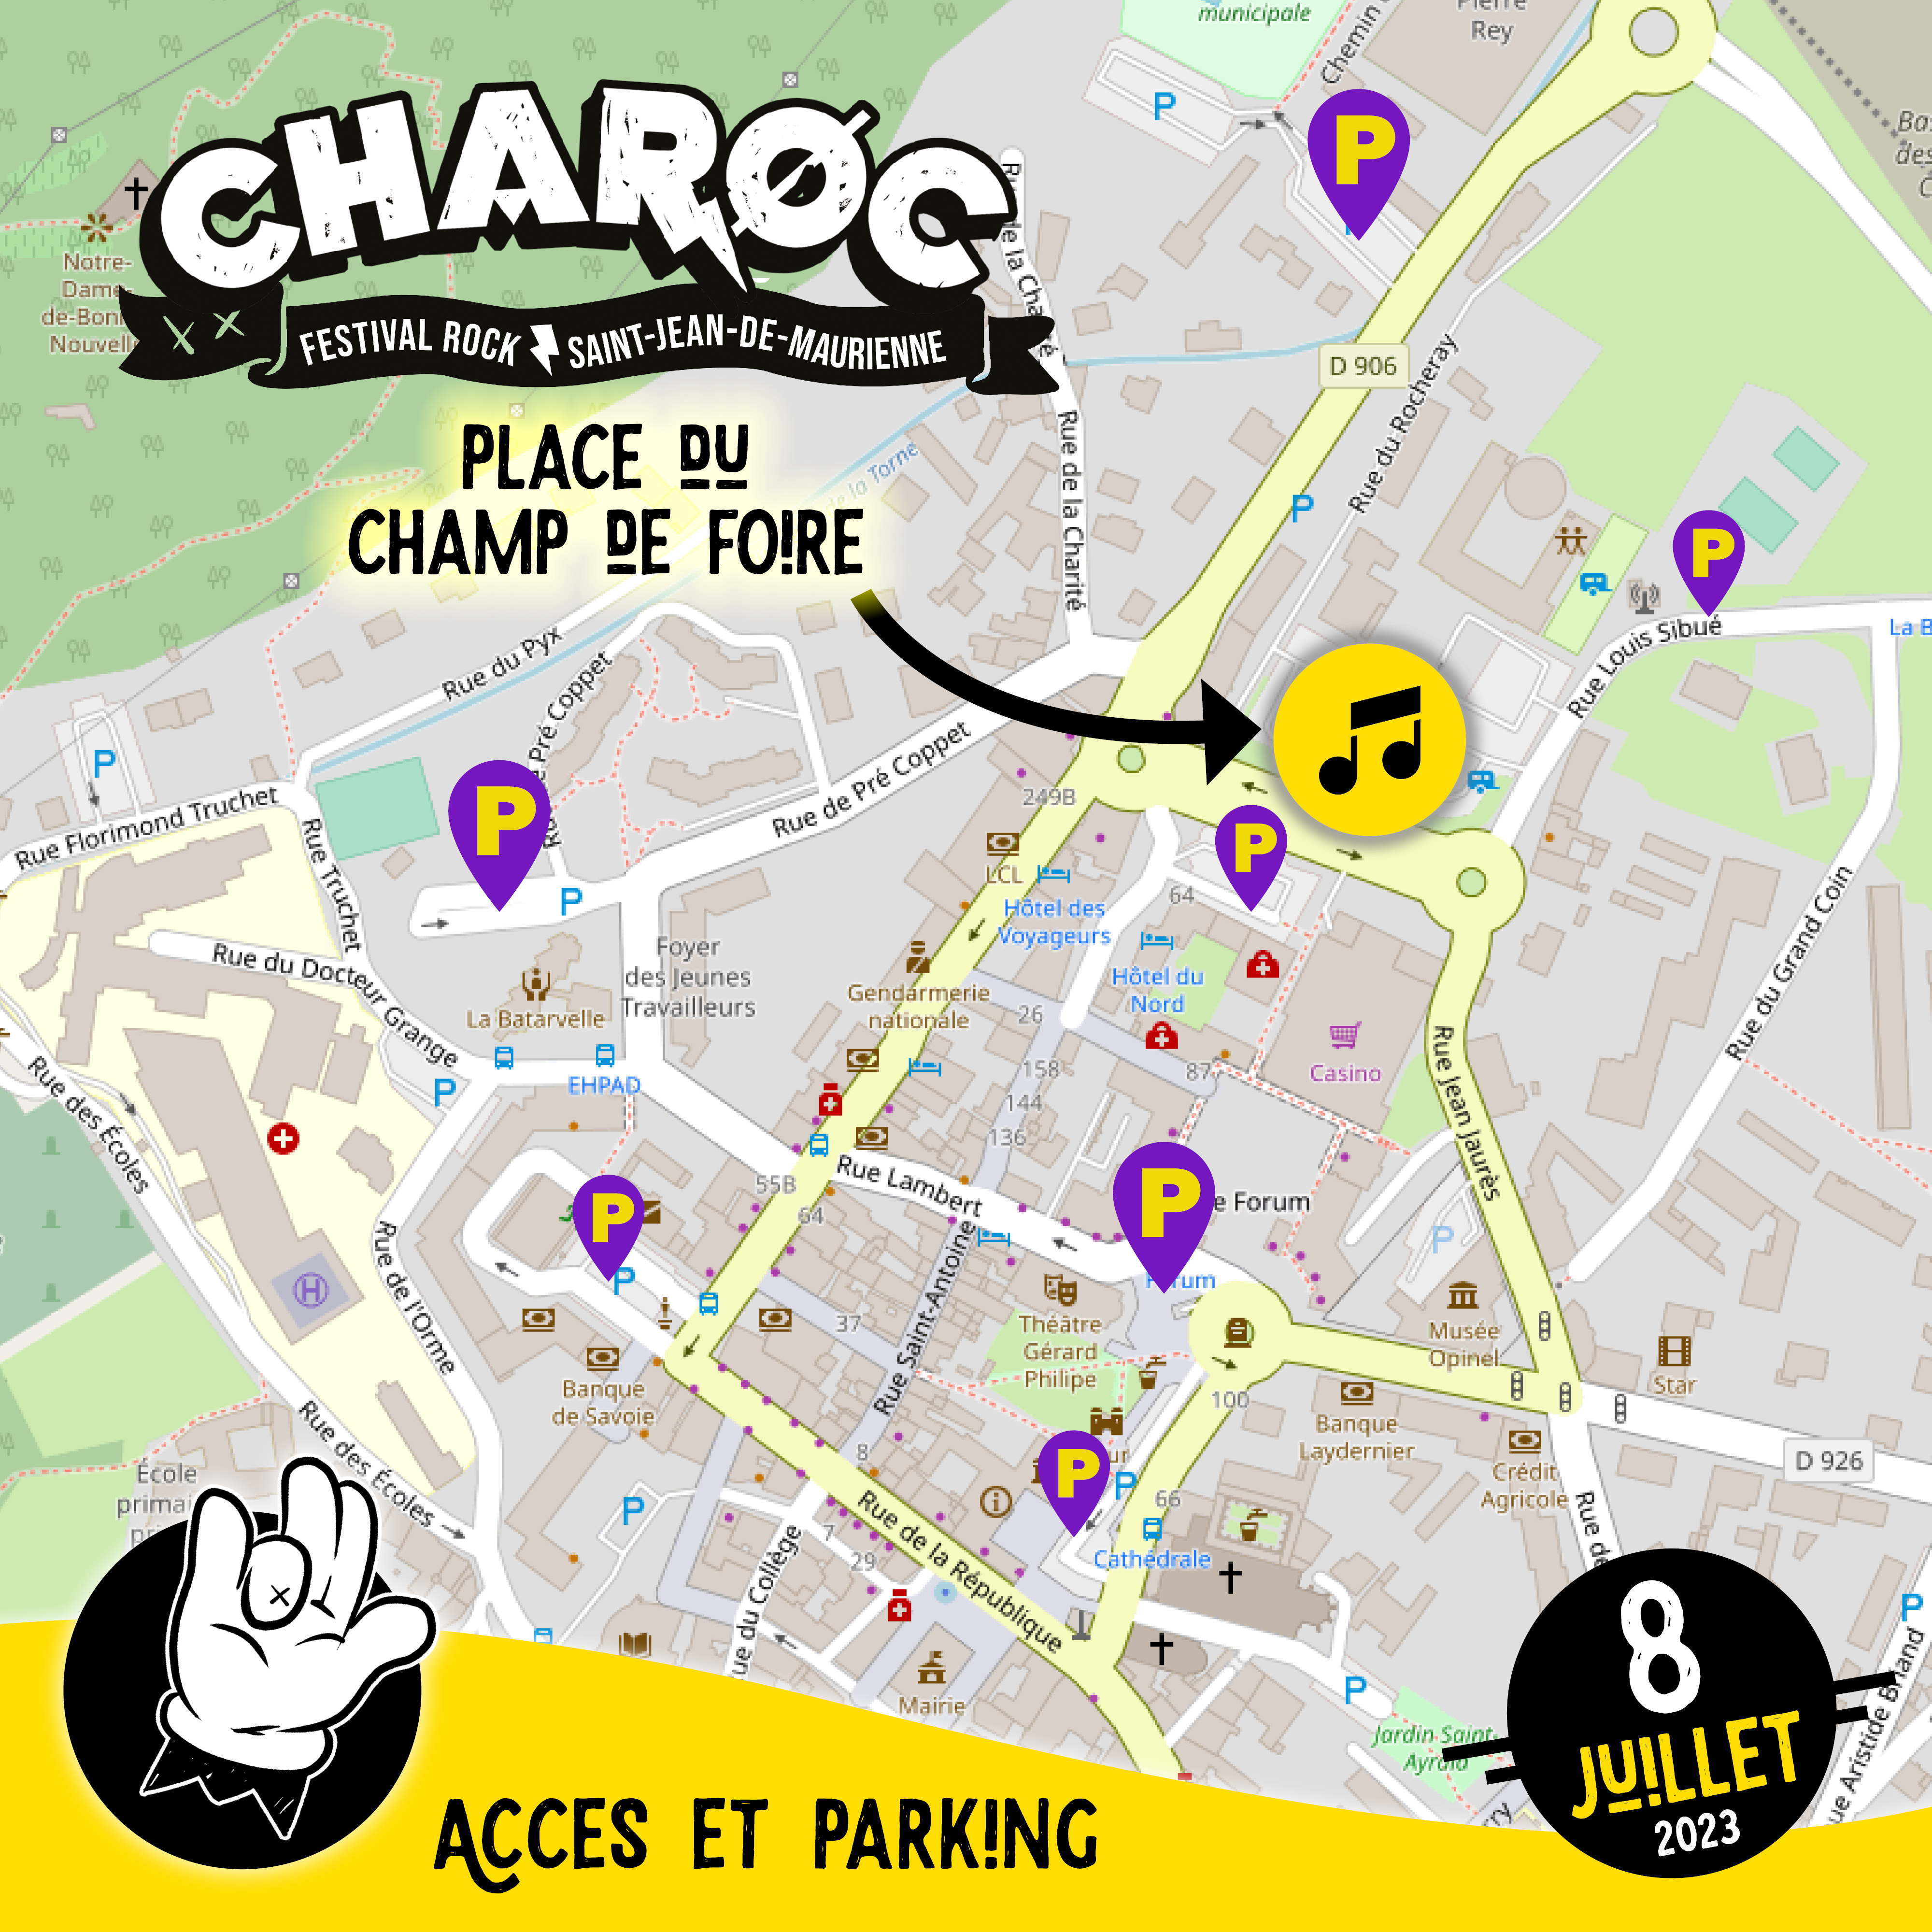 festivla charoc saint-jean-de-Maurienne acces parking 2023 savoie rock